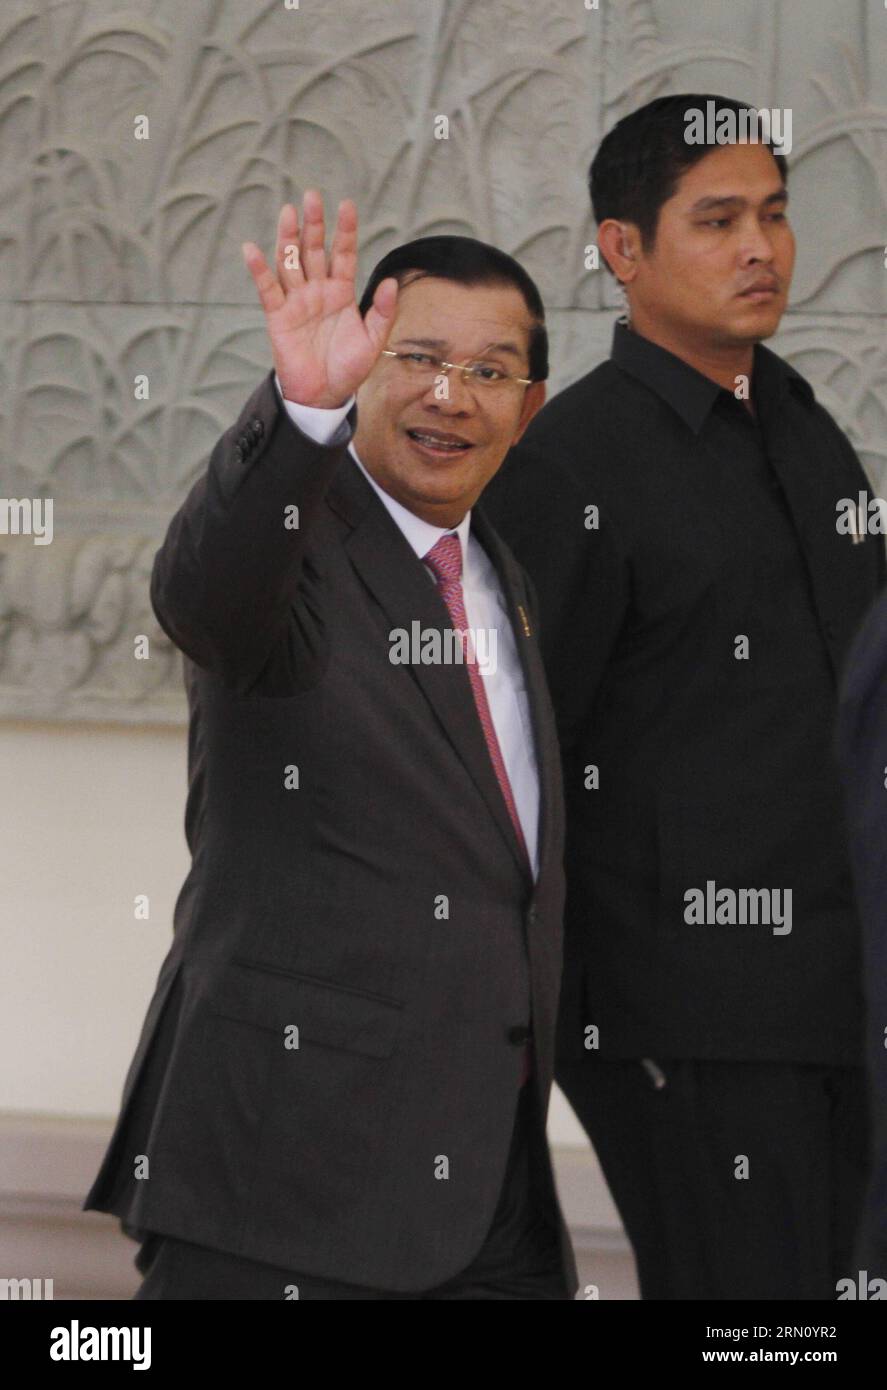 (141128) -- PHNOM PENH, le 28 novembre 2014 -- le Premier ministre cambodgien Hun Sen (L) fait signe à des journalistes à Phnom Penh, Cambodge, le 28 novembre 2014. Le Premier ministre cambodgien, Hun Sen, vice-président du Parti du peuple cambodgien au pouvoir, a rencontré Sam Rainsy, président du Parti du sauvetage national du Cambodge, parti d'opposition, vendredi, pour trouver des solutions aux questions restantes après que les deux dirigeants ont convenu en juillet de mettre fin à leurs divergences lors des élections de l an dernier. CAMBODGE-PHNOM PENH-PM-LEADER DE L'OPPOSITION-RÉUNION Sovannara PUBLICATIONxNOTxINxCHN Phnom Penh novembre 28 2014 Premier ministres cambodgiens HUN Sen l Wa Banque D'Images